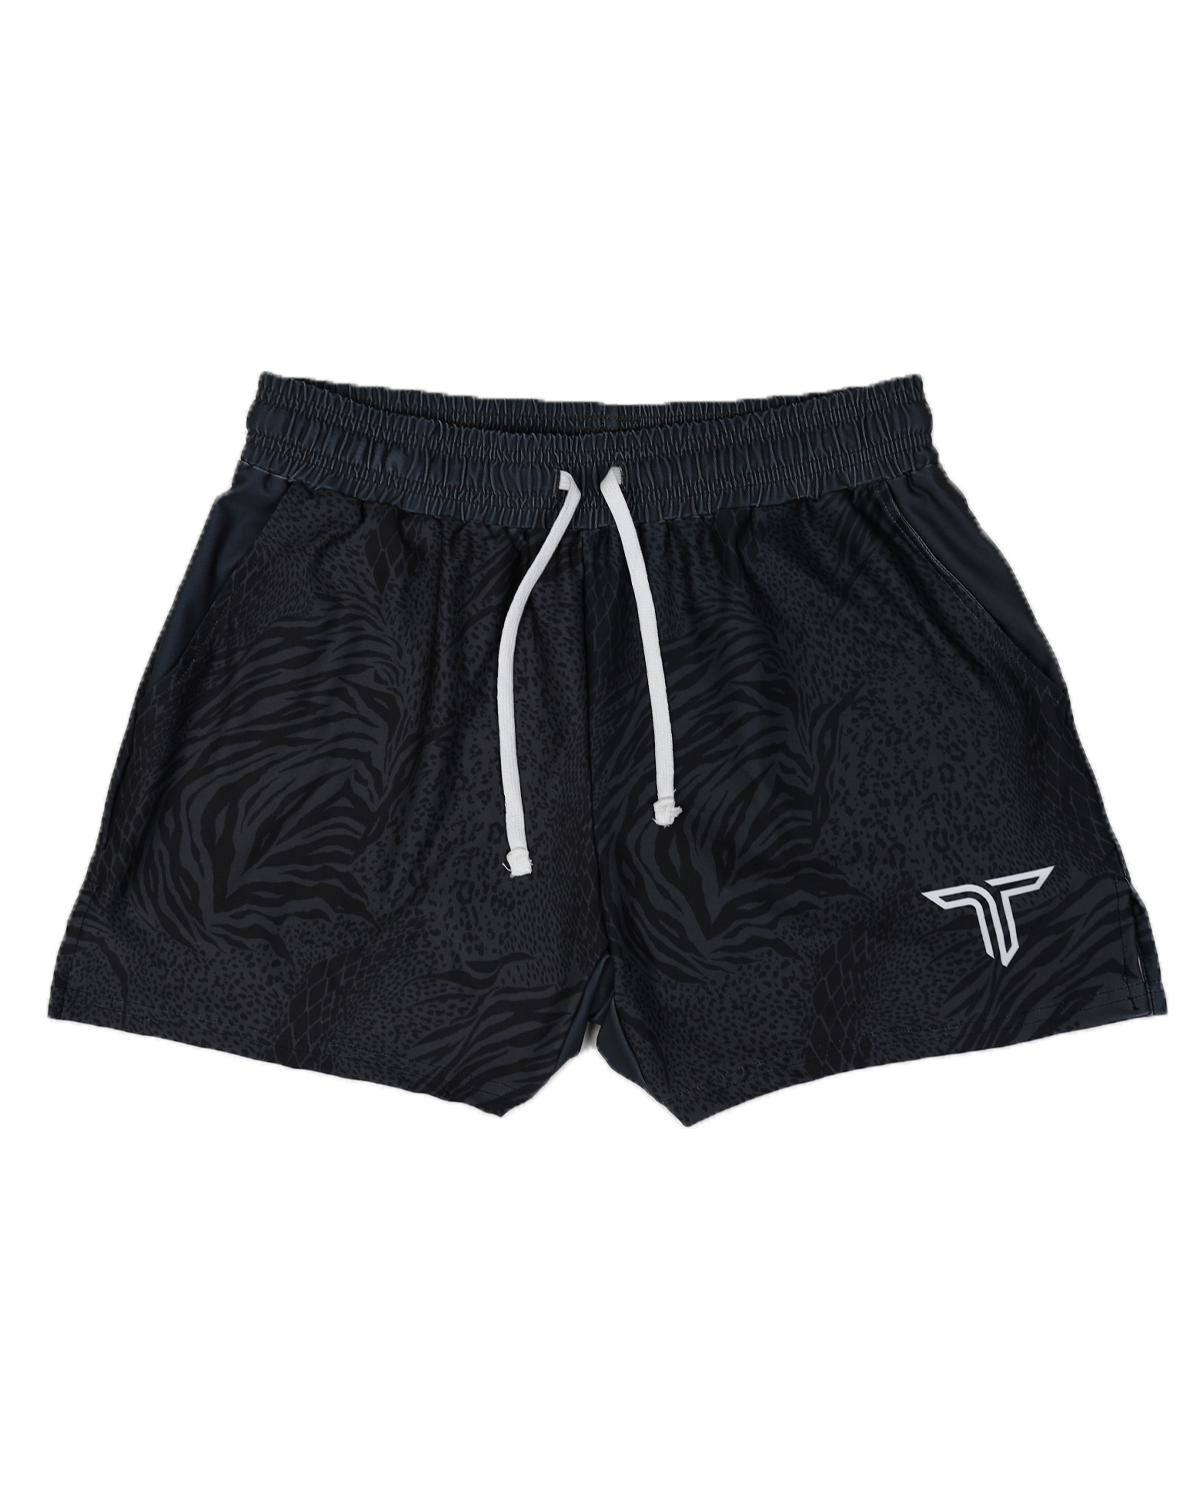 TD-GS-009 360° Custom Gym Shorts (5"&7“ Inseam)